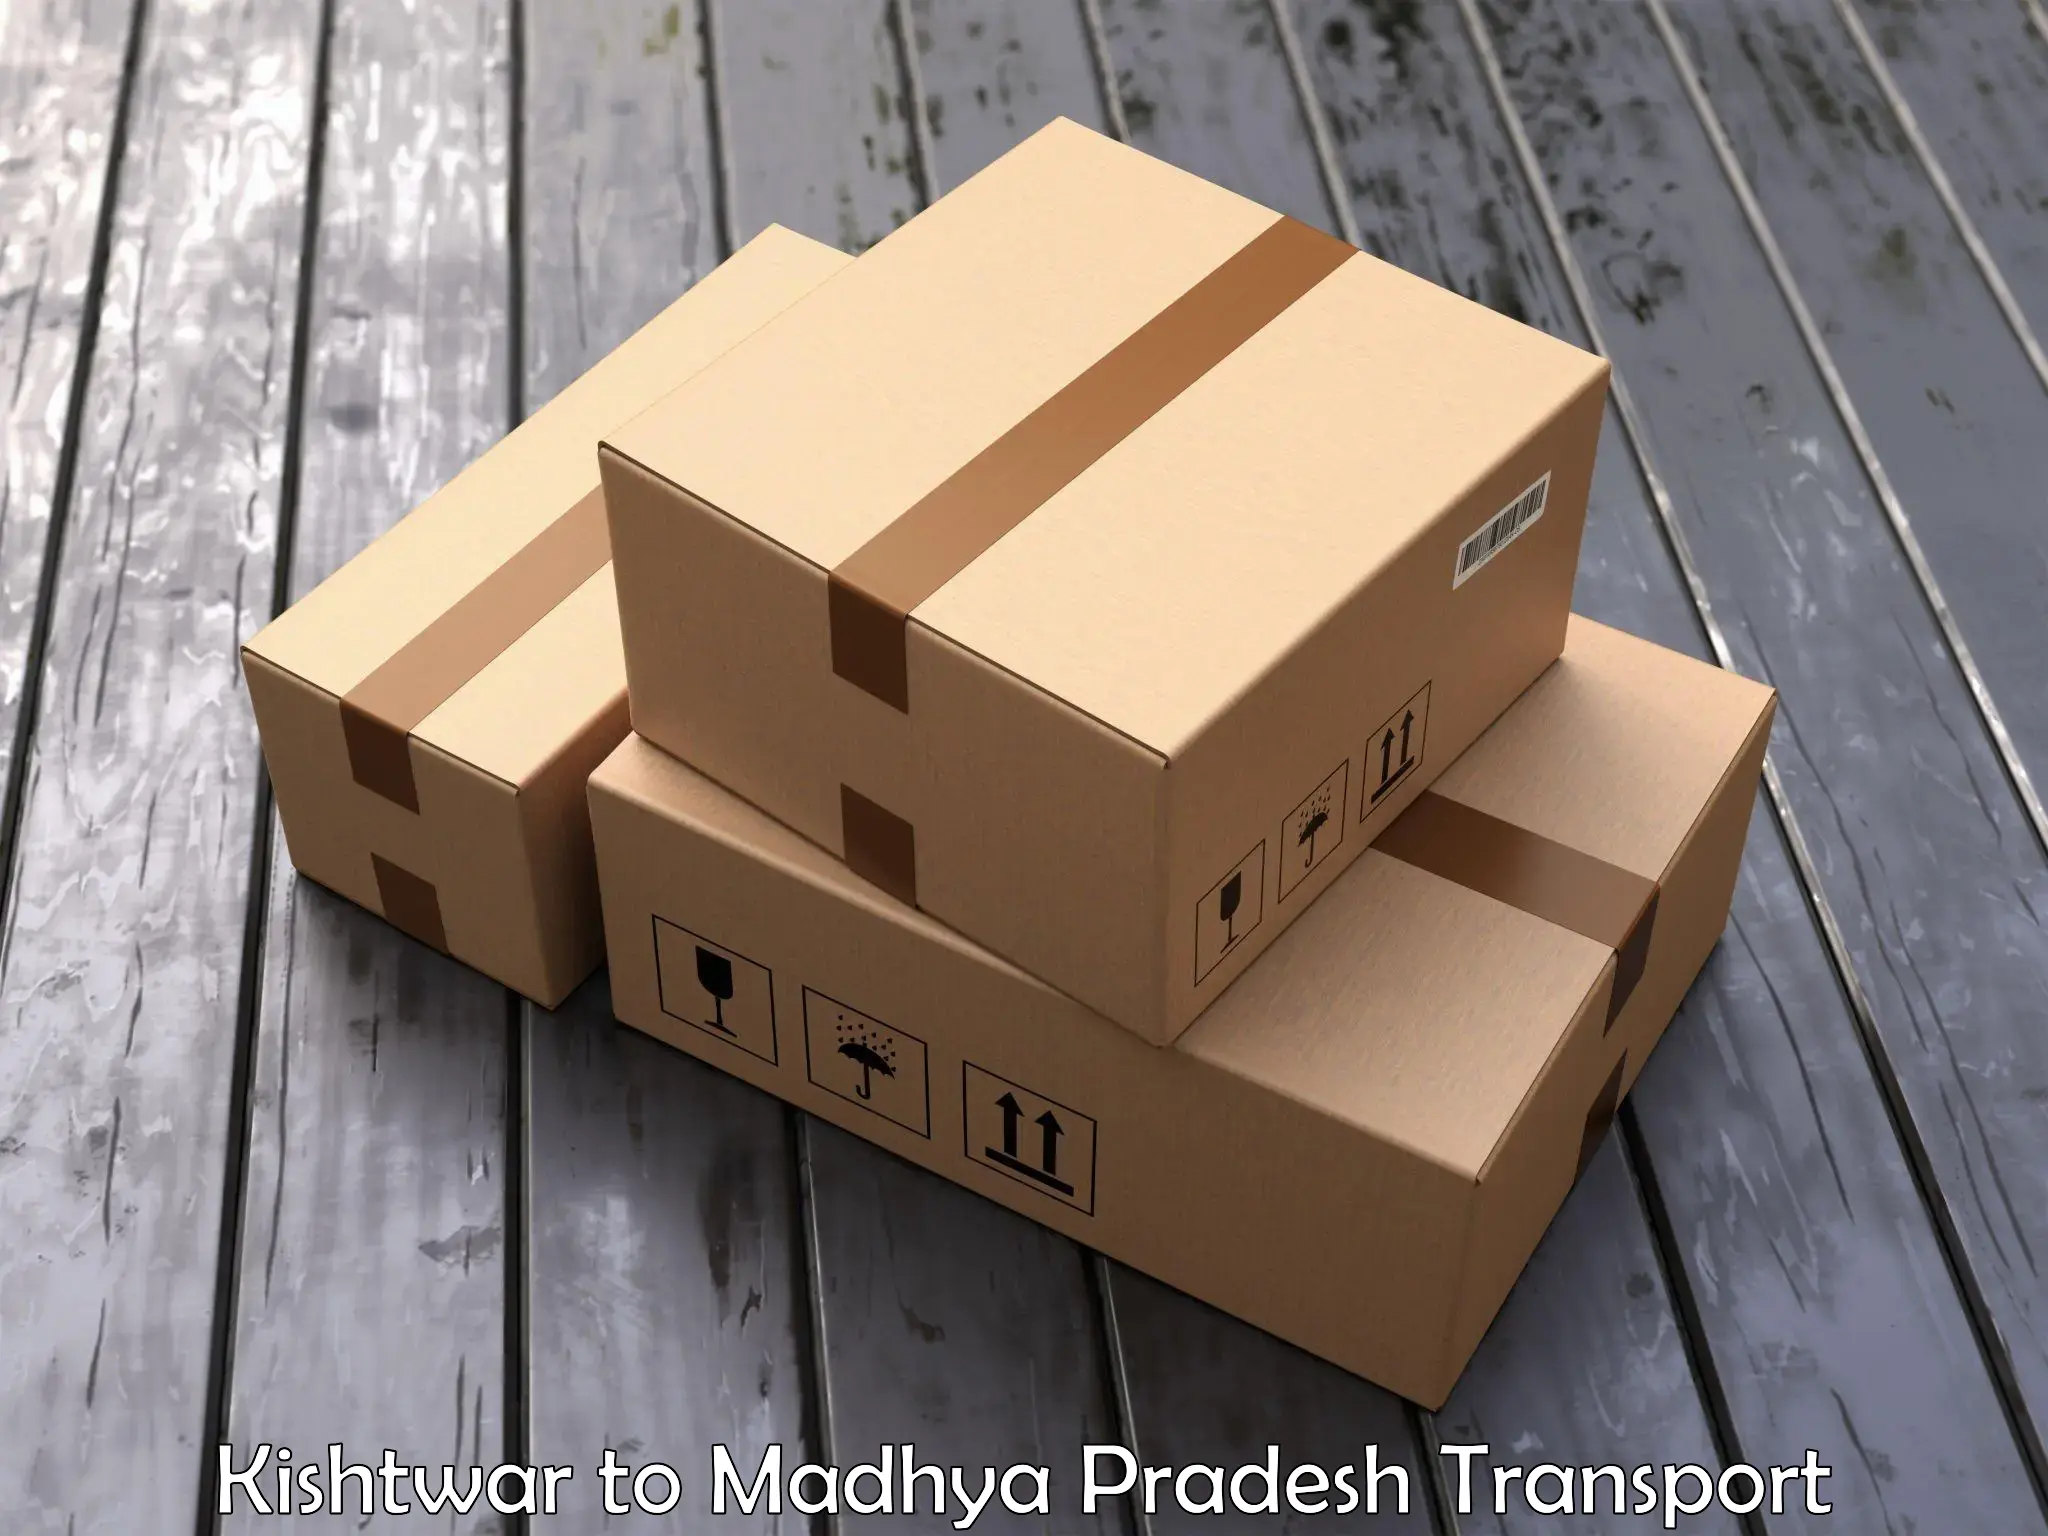 Container transportation services Kishtwar to Garh Rewa